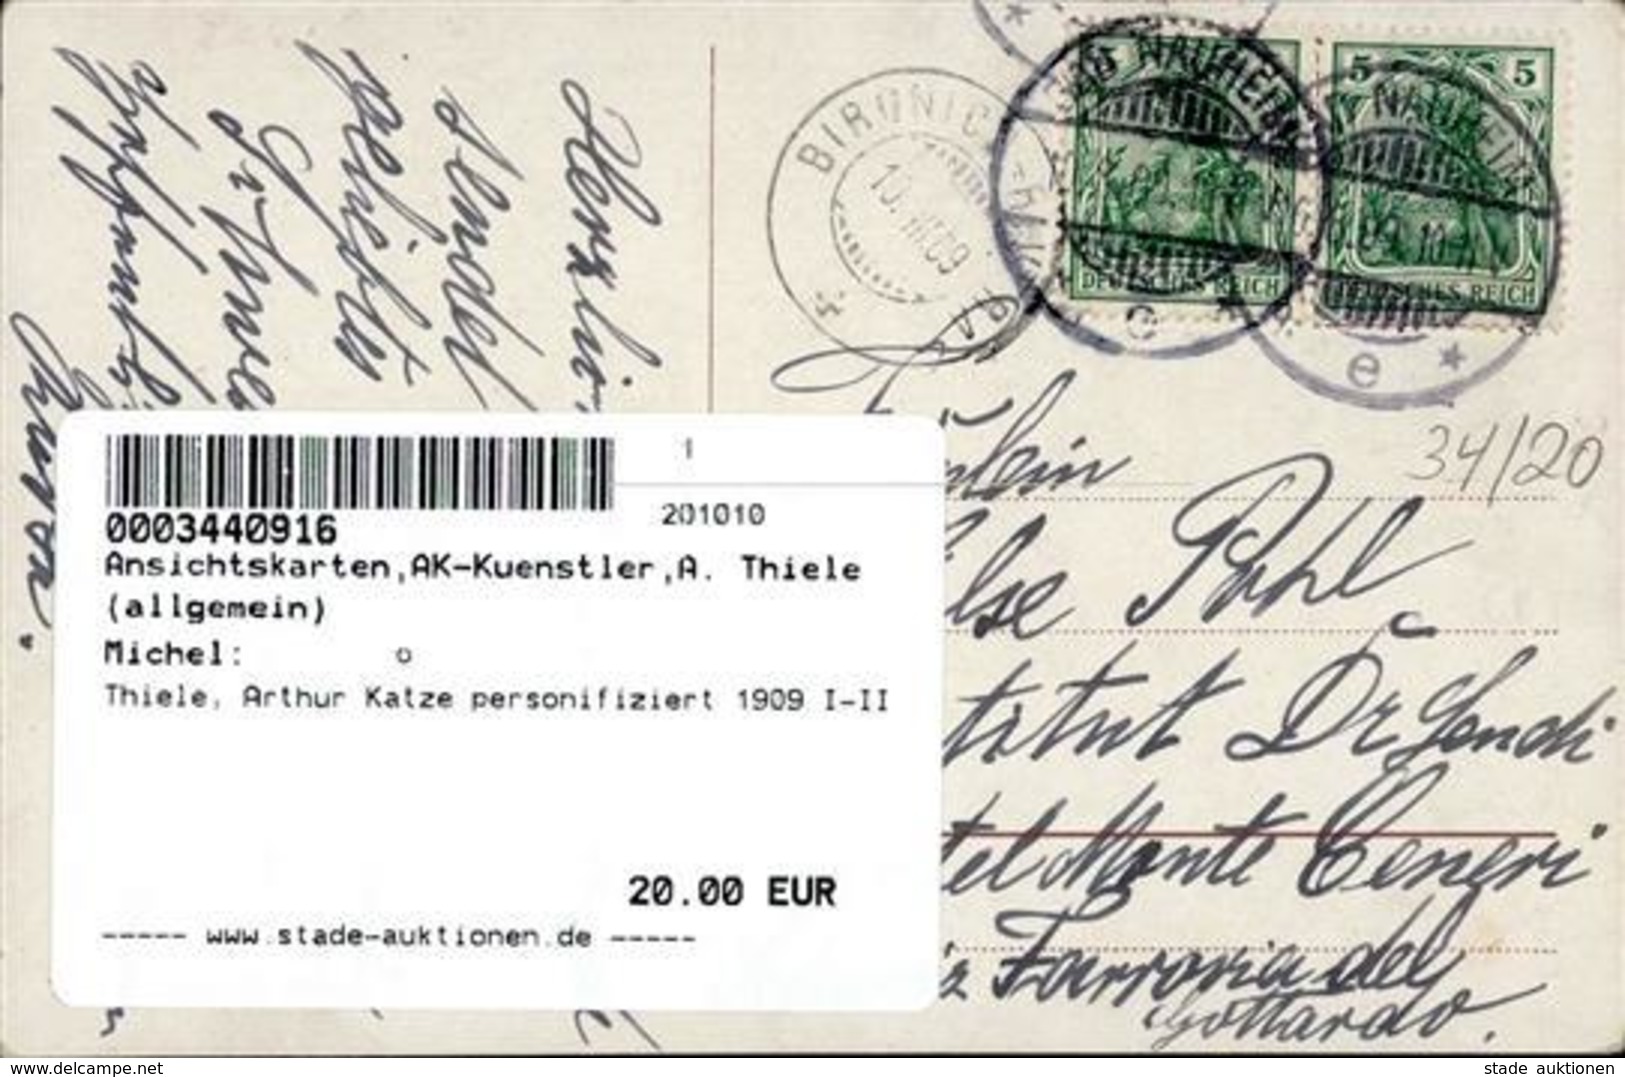 Thiele, Arthur Katze Personifiziert 1909 I-II Chat - Thiele, Arthur